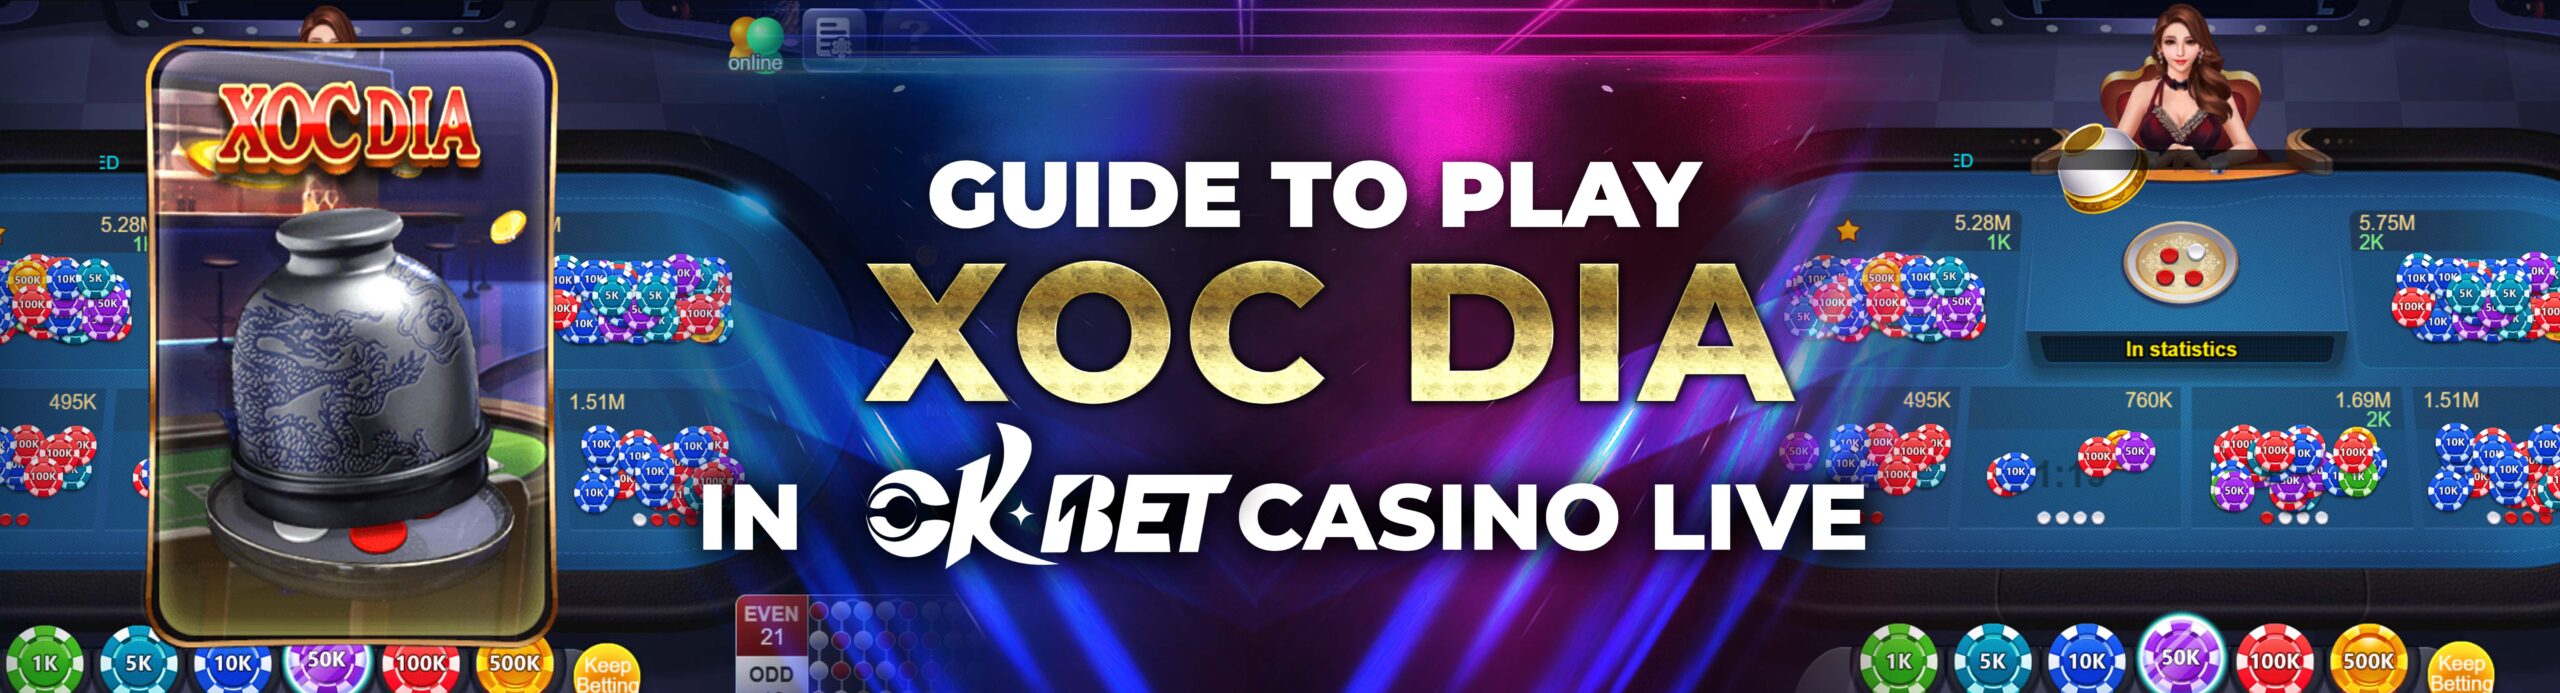 How to Play Xoc Dia in OKBET Casino Live - OKBET live casino